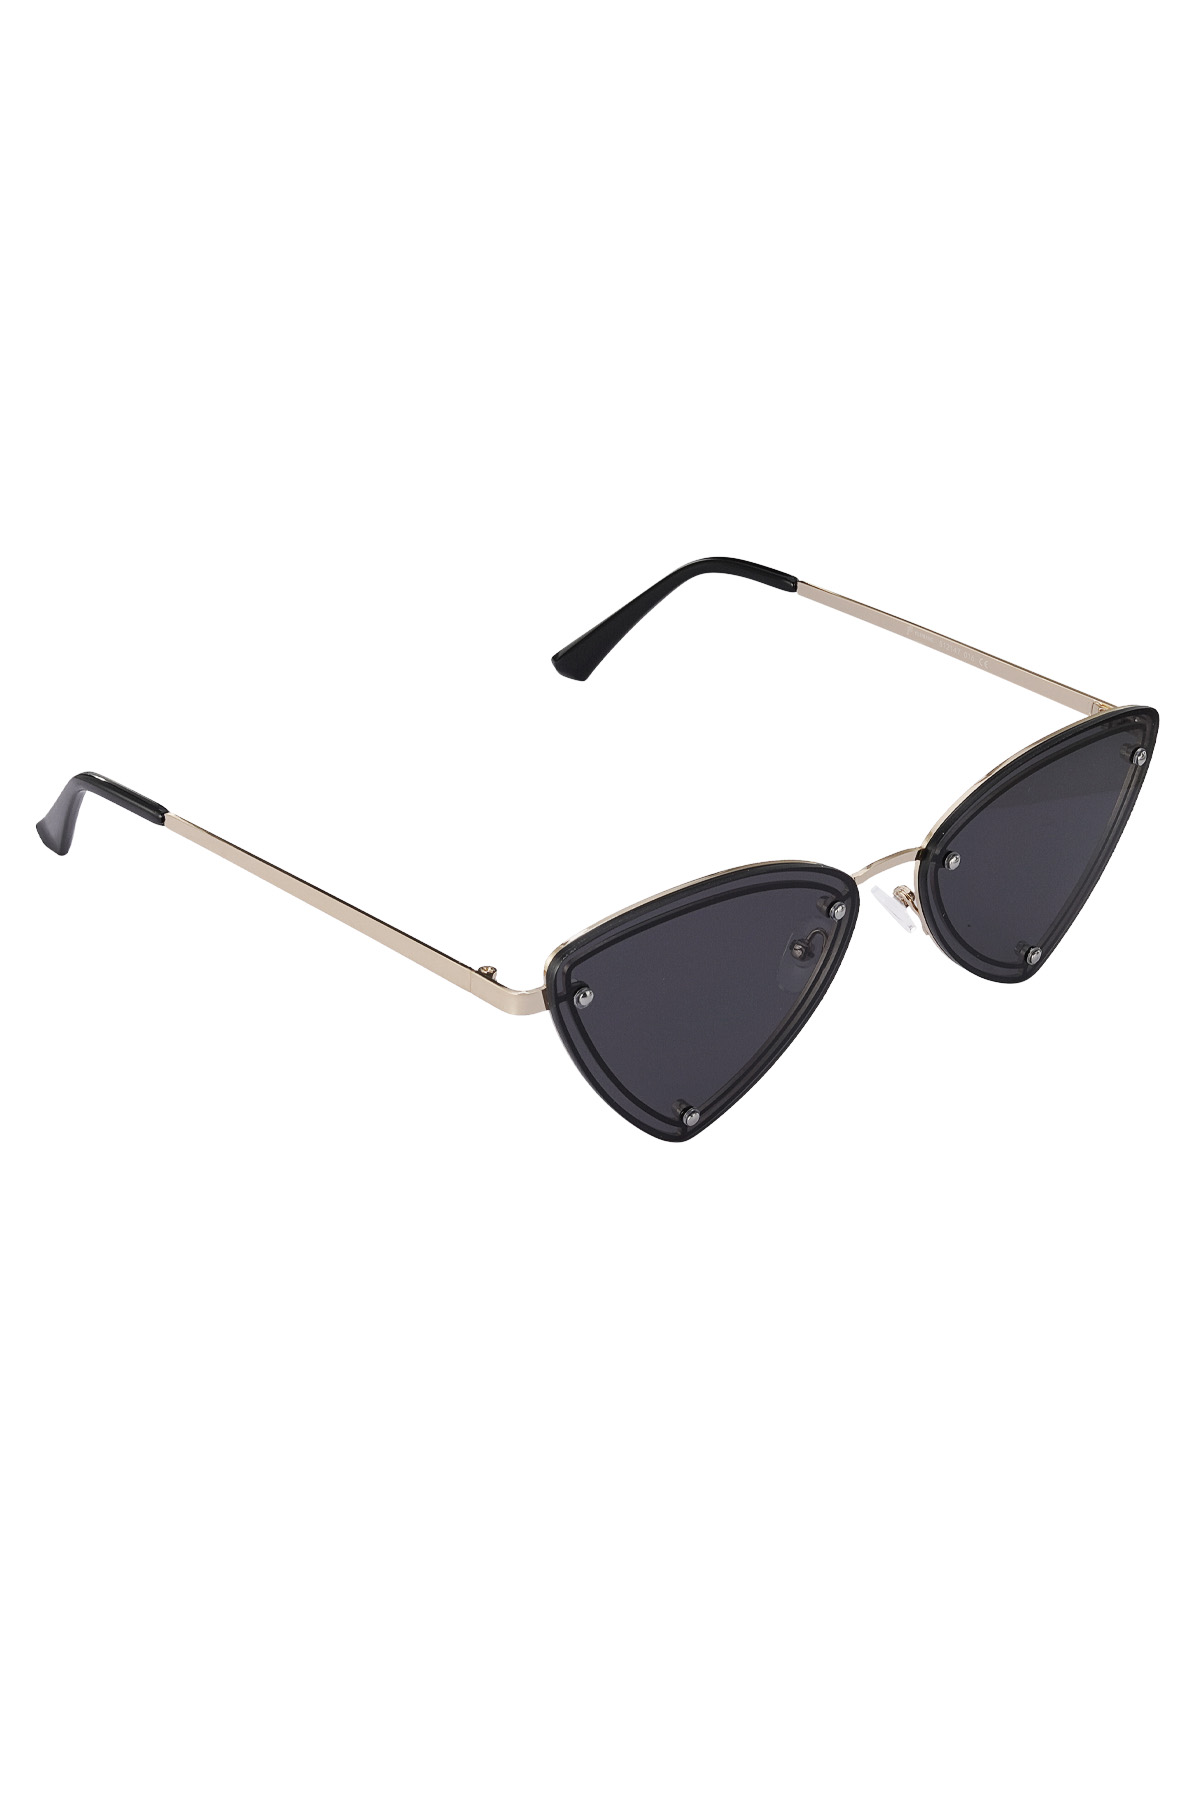 Retro party sunglasses - black gold